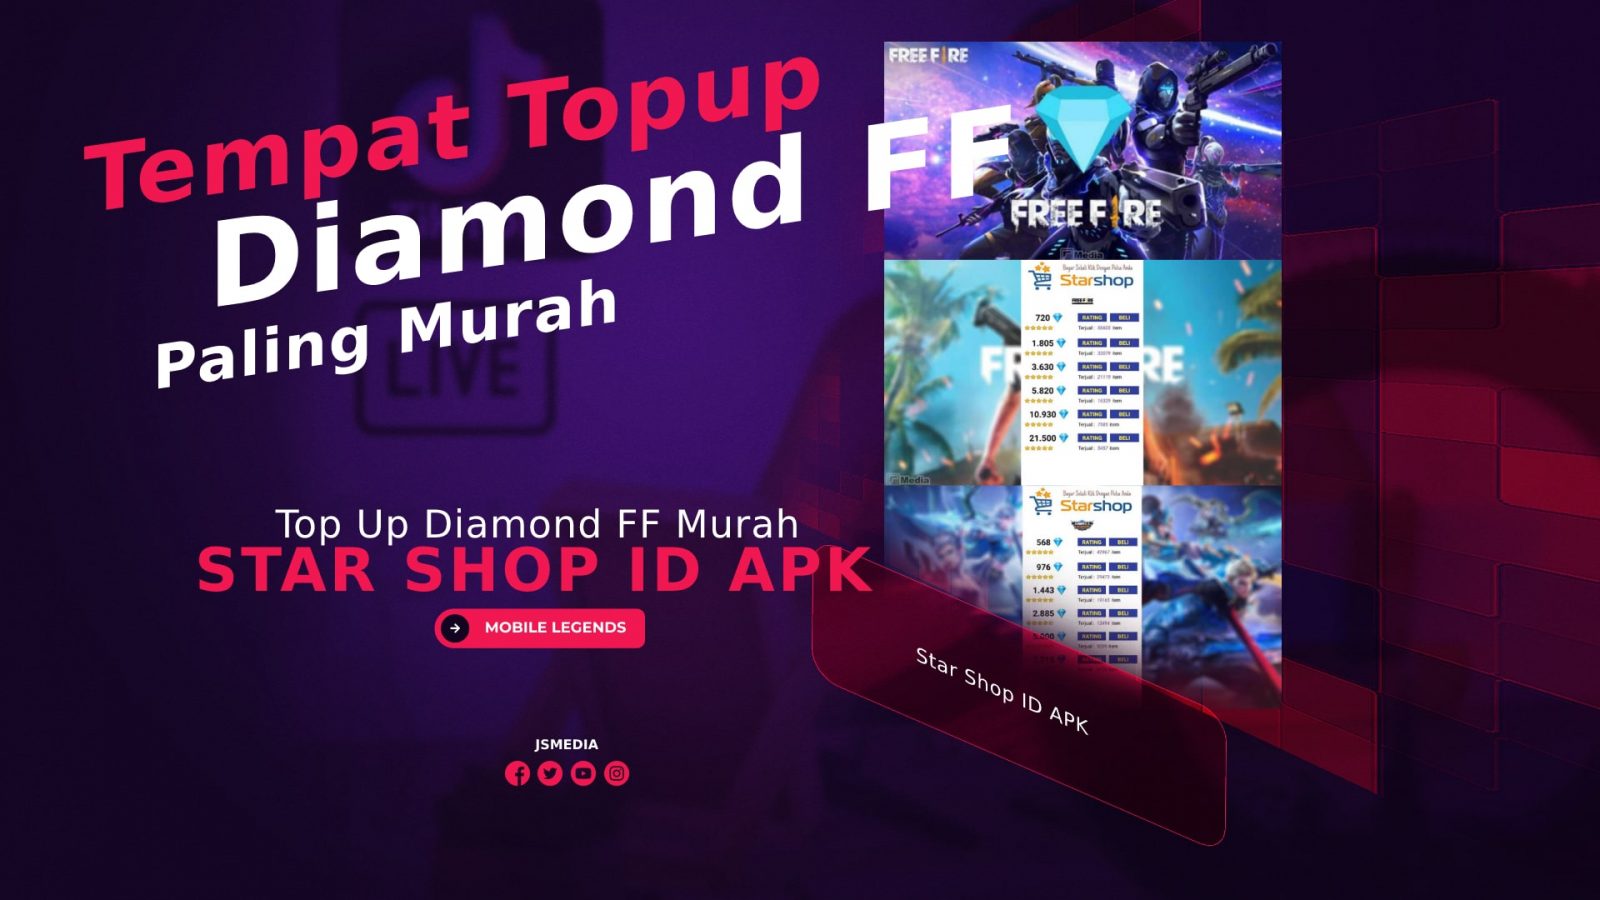 Star Shop ID APK: Tempat Top Up Diamond FF Paling Murah